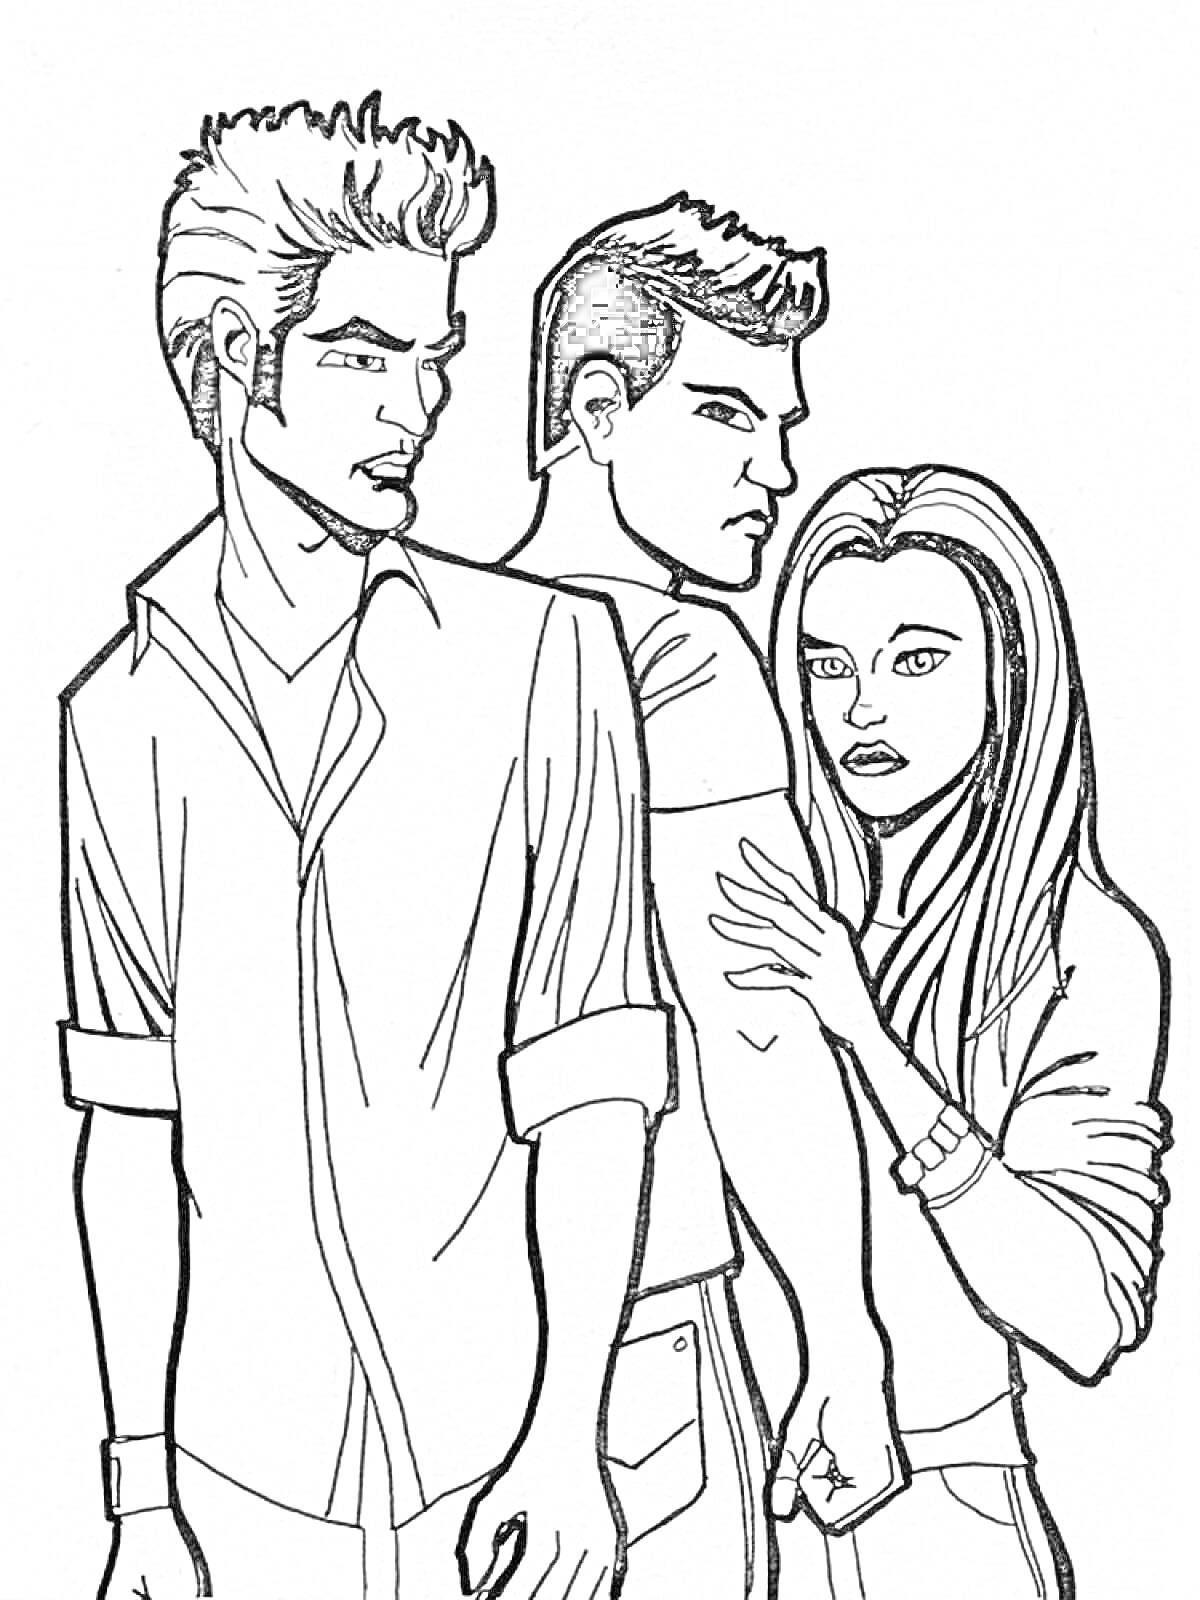 Раскраска Три персонажа; мужчина с короткими волосами и рубашкой, мужчина с короткими волосами в футболке, девушка с длинными волосами и футболкой; девушка держит руку мужчины.